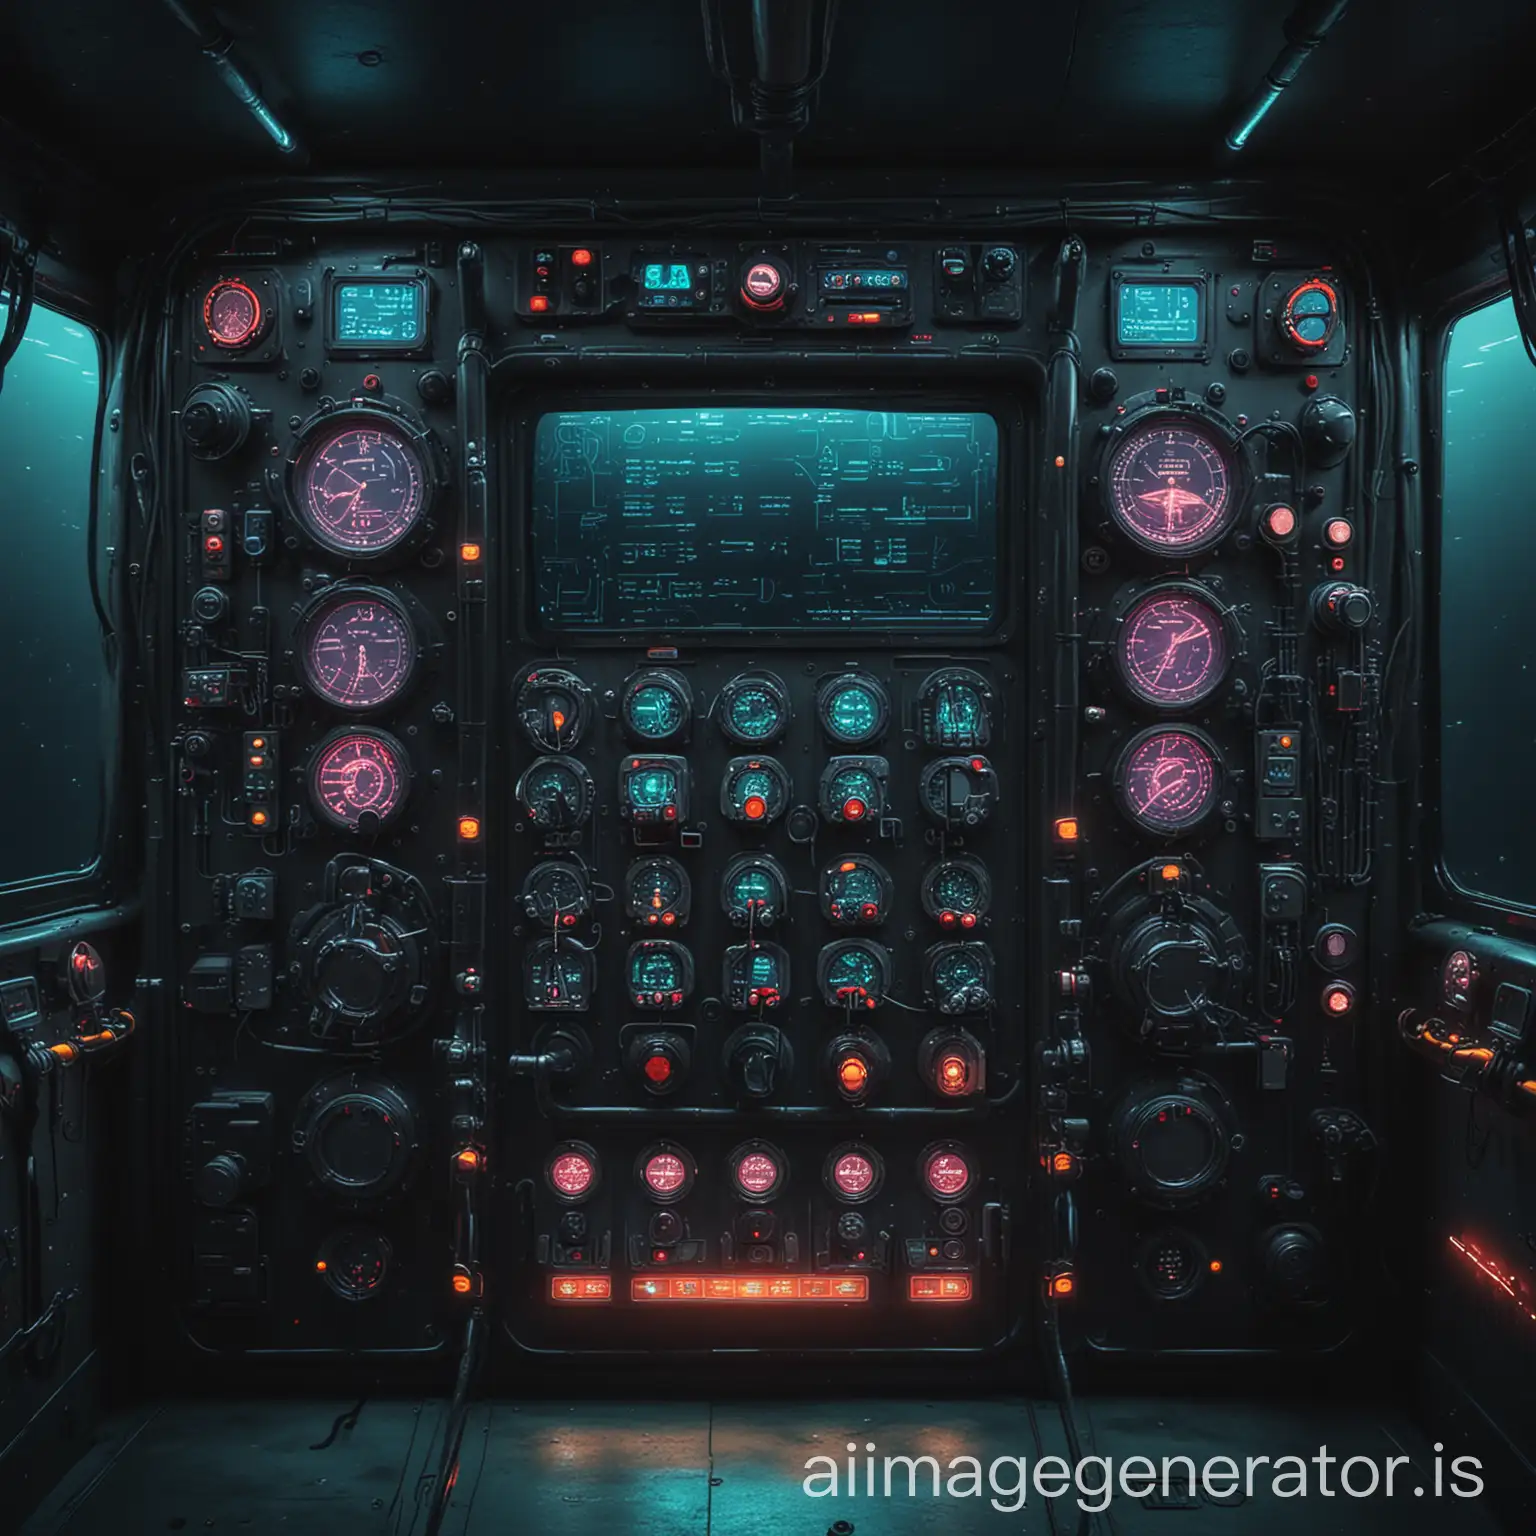 tablero de controles 
de navegación de un submarino de estilo futurista minimalista con colores neon